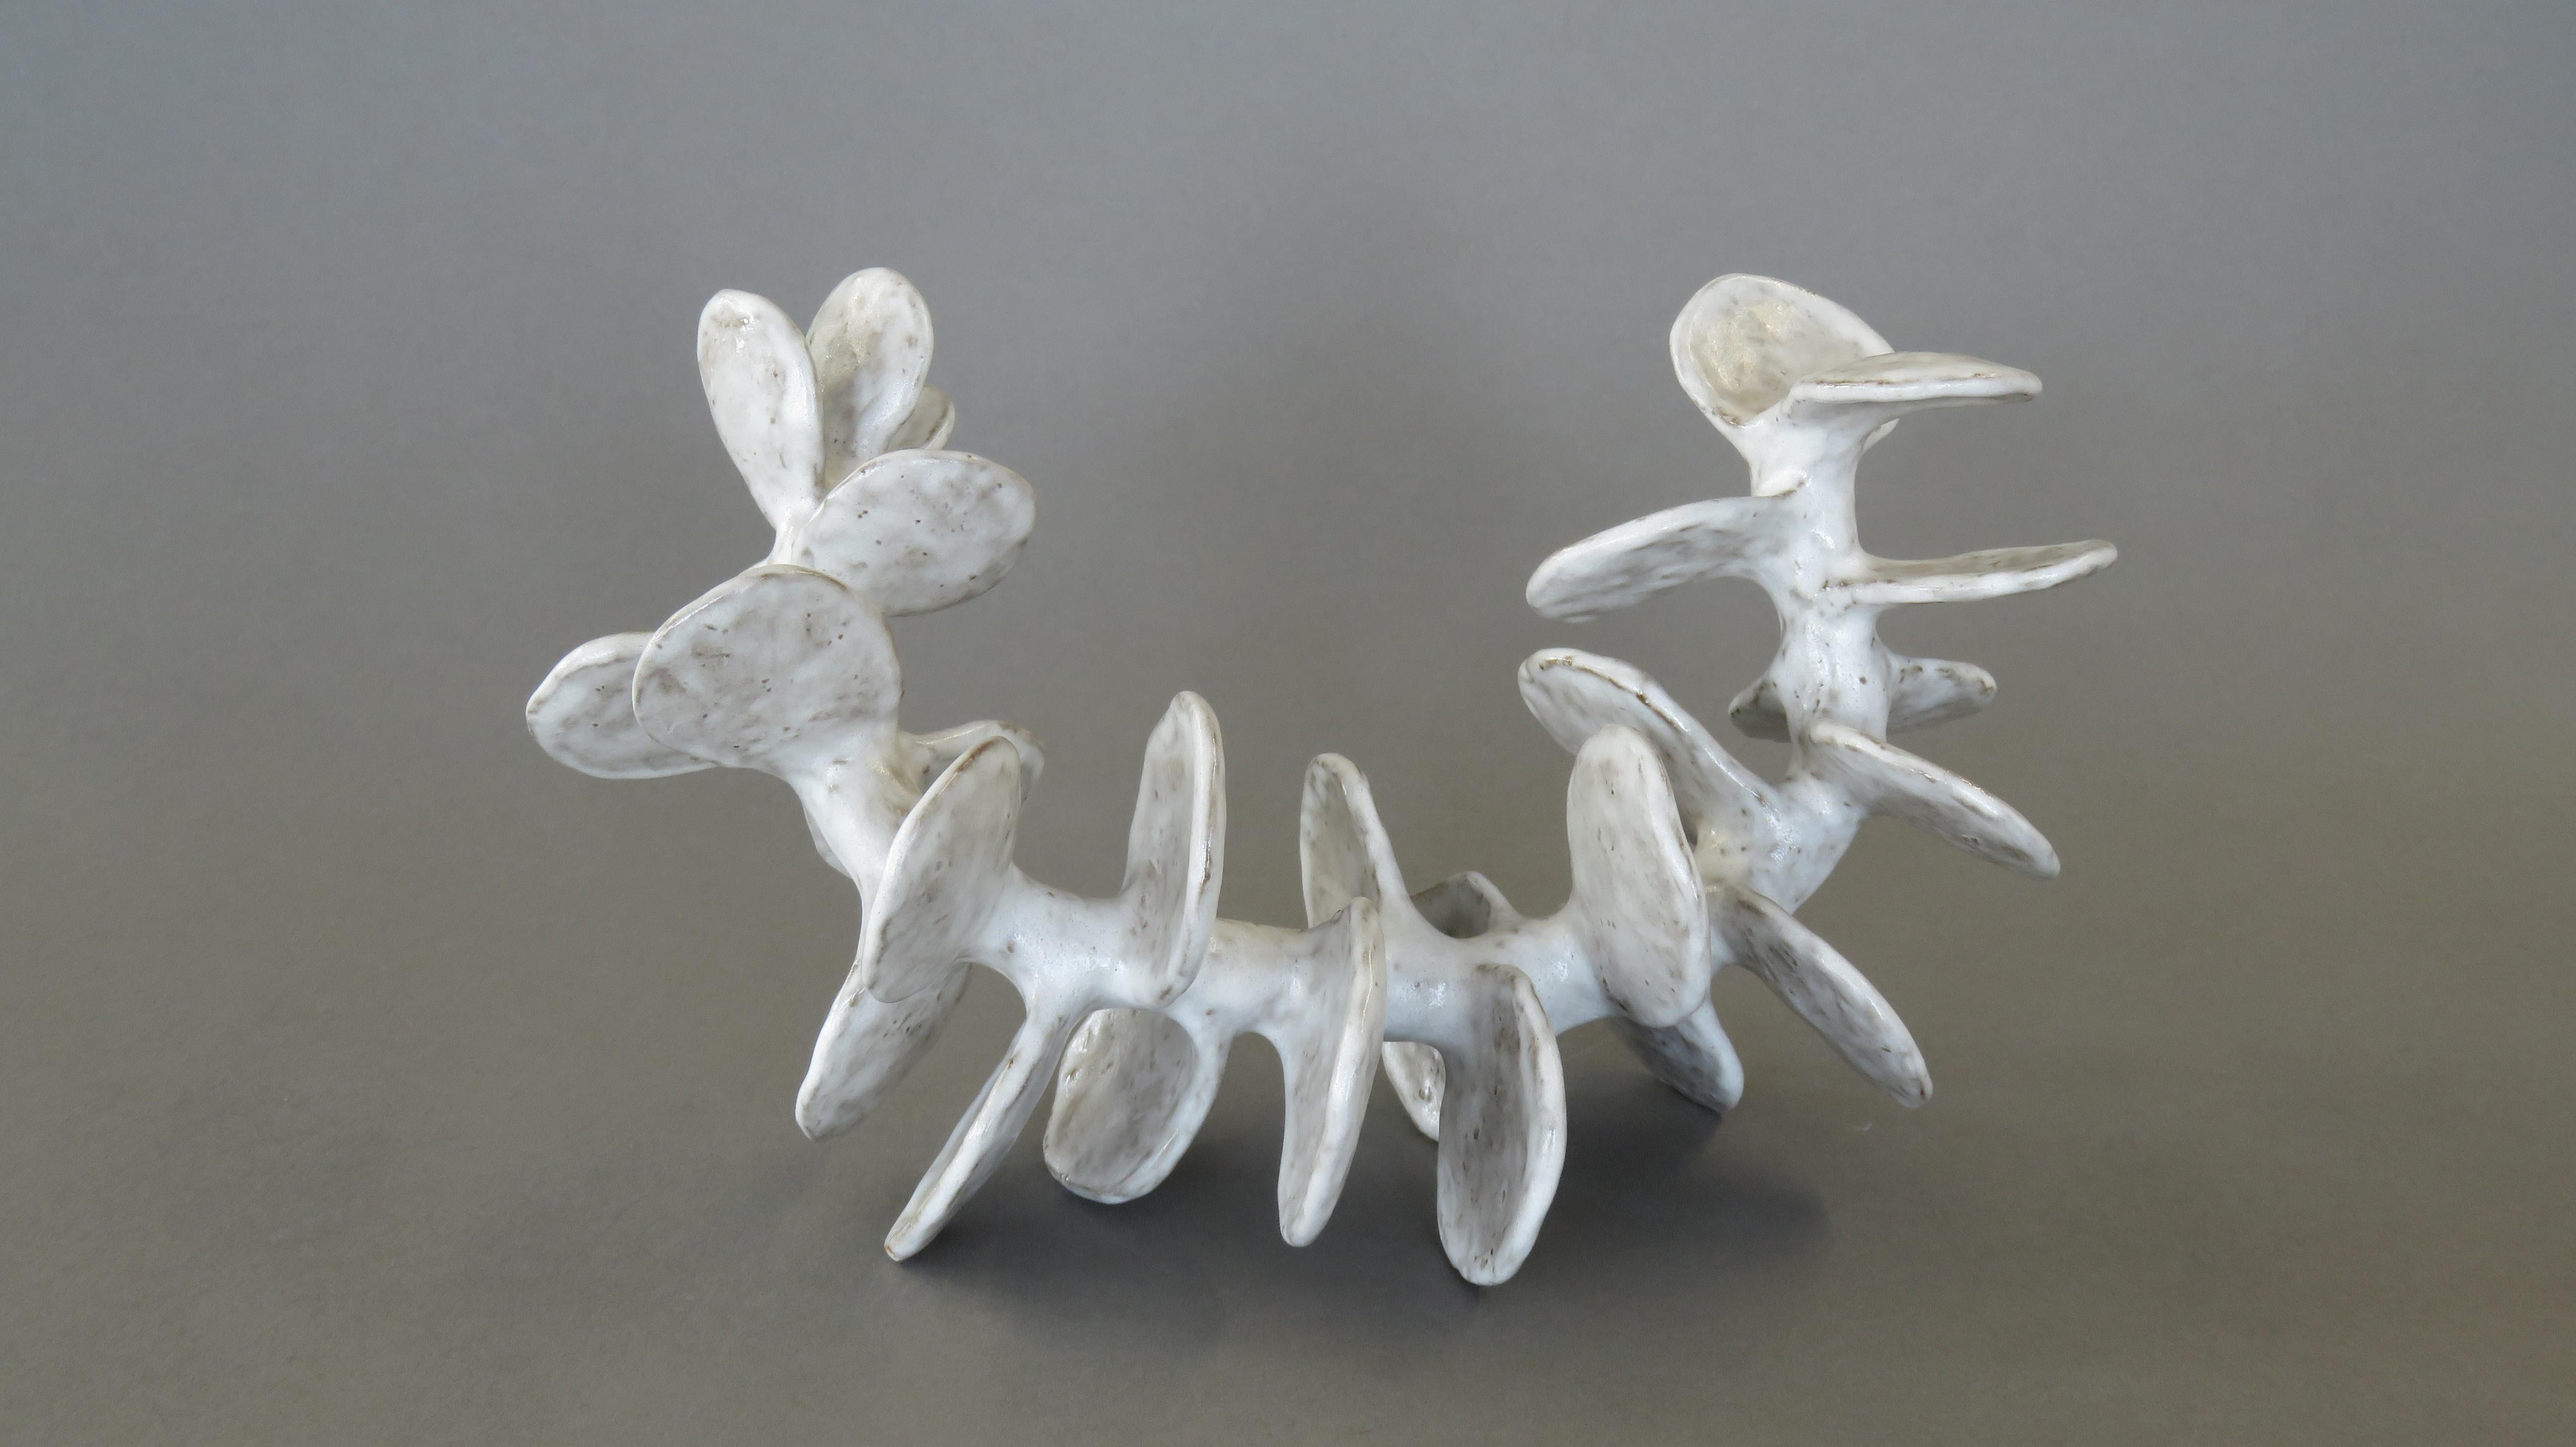 Handgefertigte Keramik-Skulptur:: Liegende Skelett-Wirbelsäule in gesprenkeltem Weiß (21. Jahrhundert und zeitgenössisch)